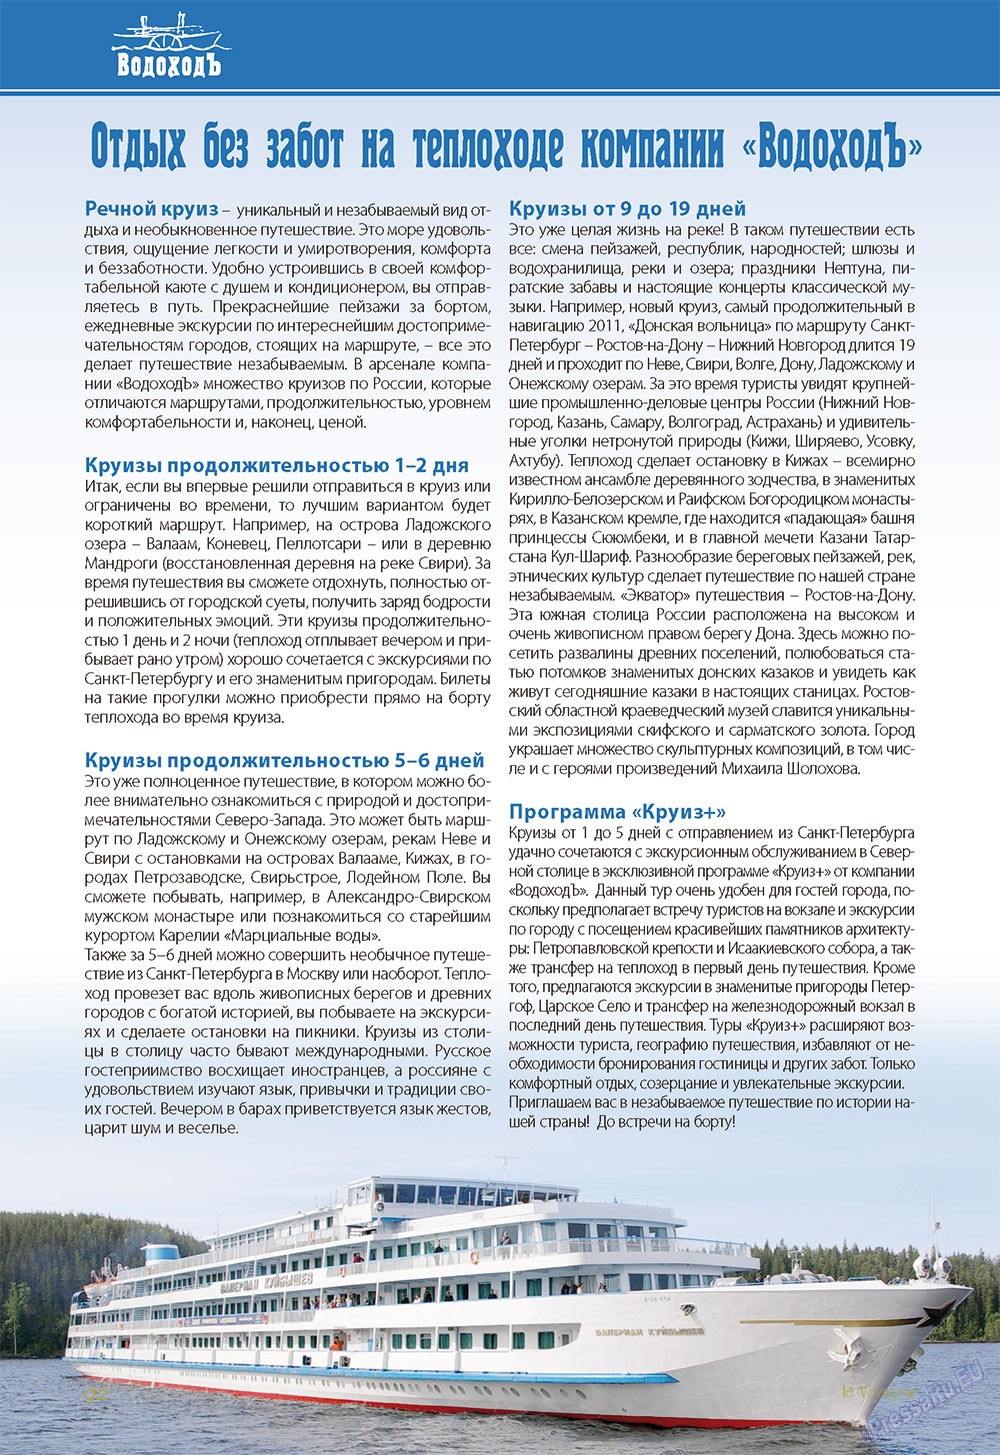 Le Voyageur (журнал). 2012 год, номер 22, стр. 94